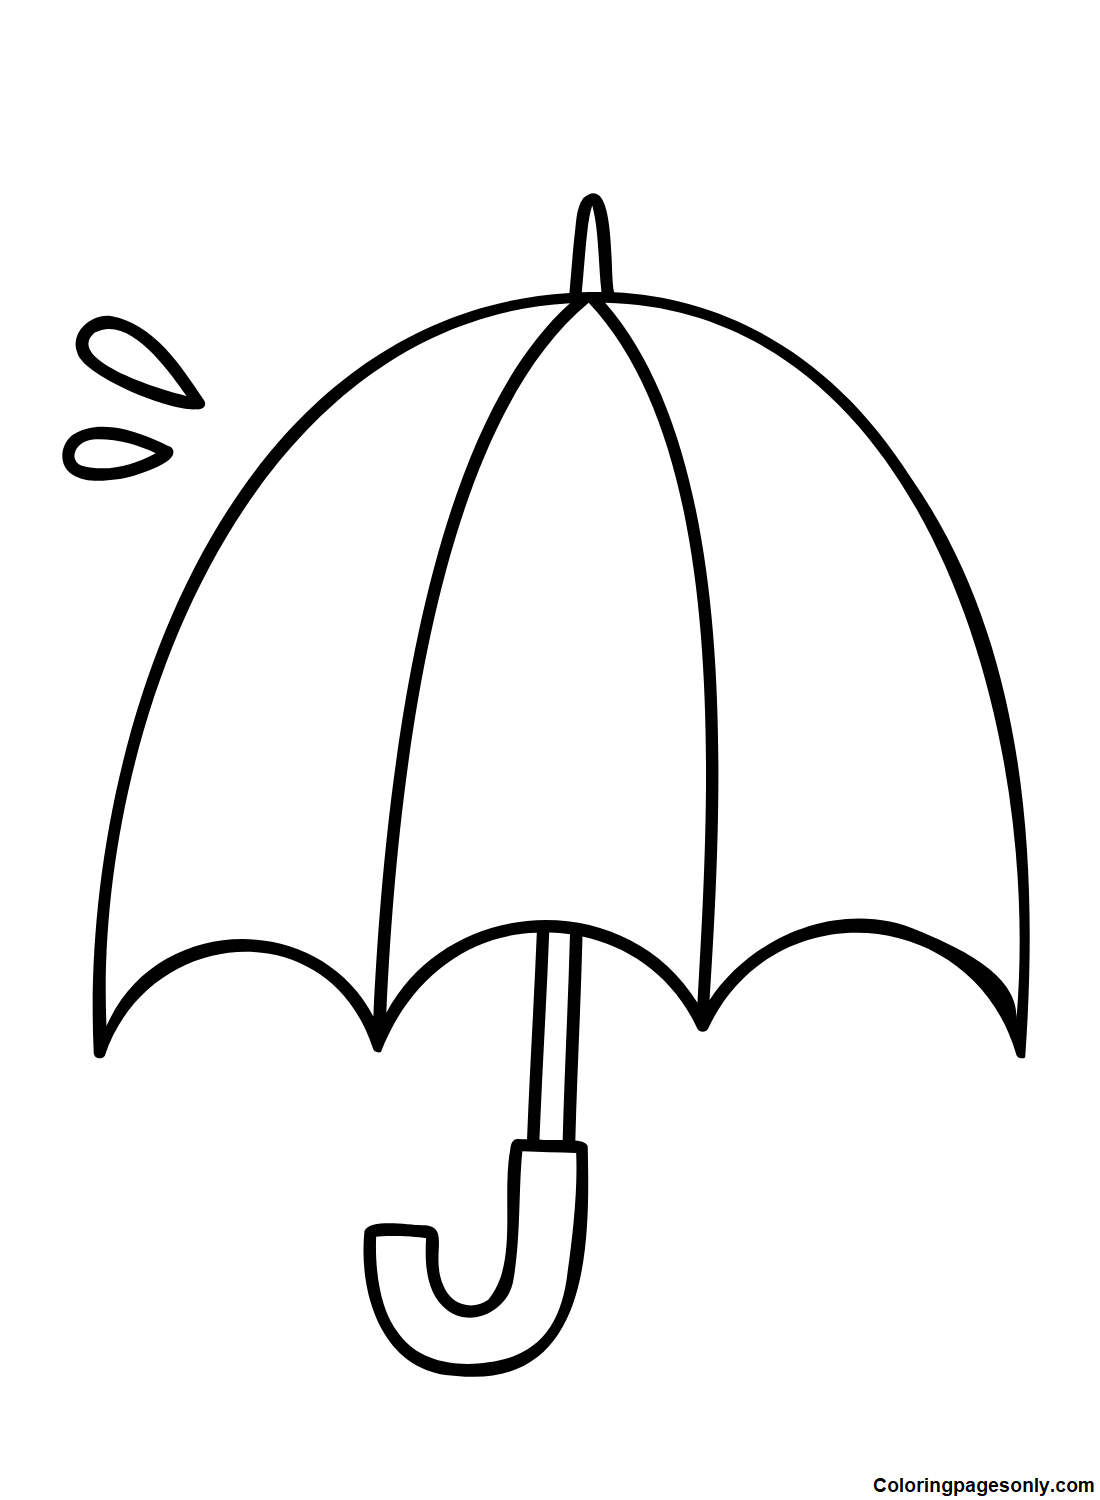 Imagens de guarda-chuva da Umbrella